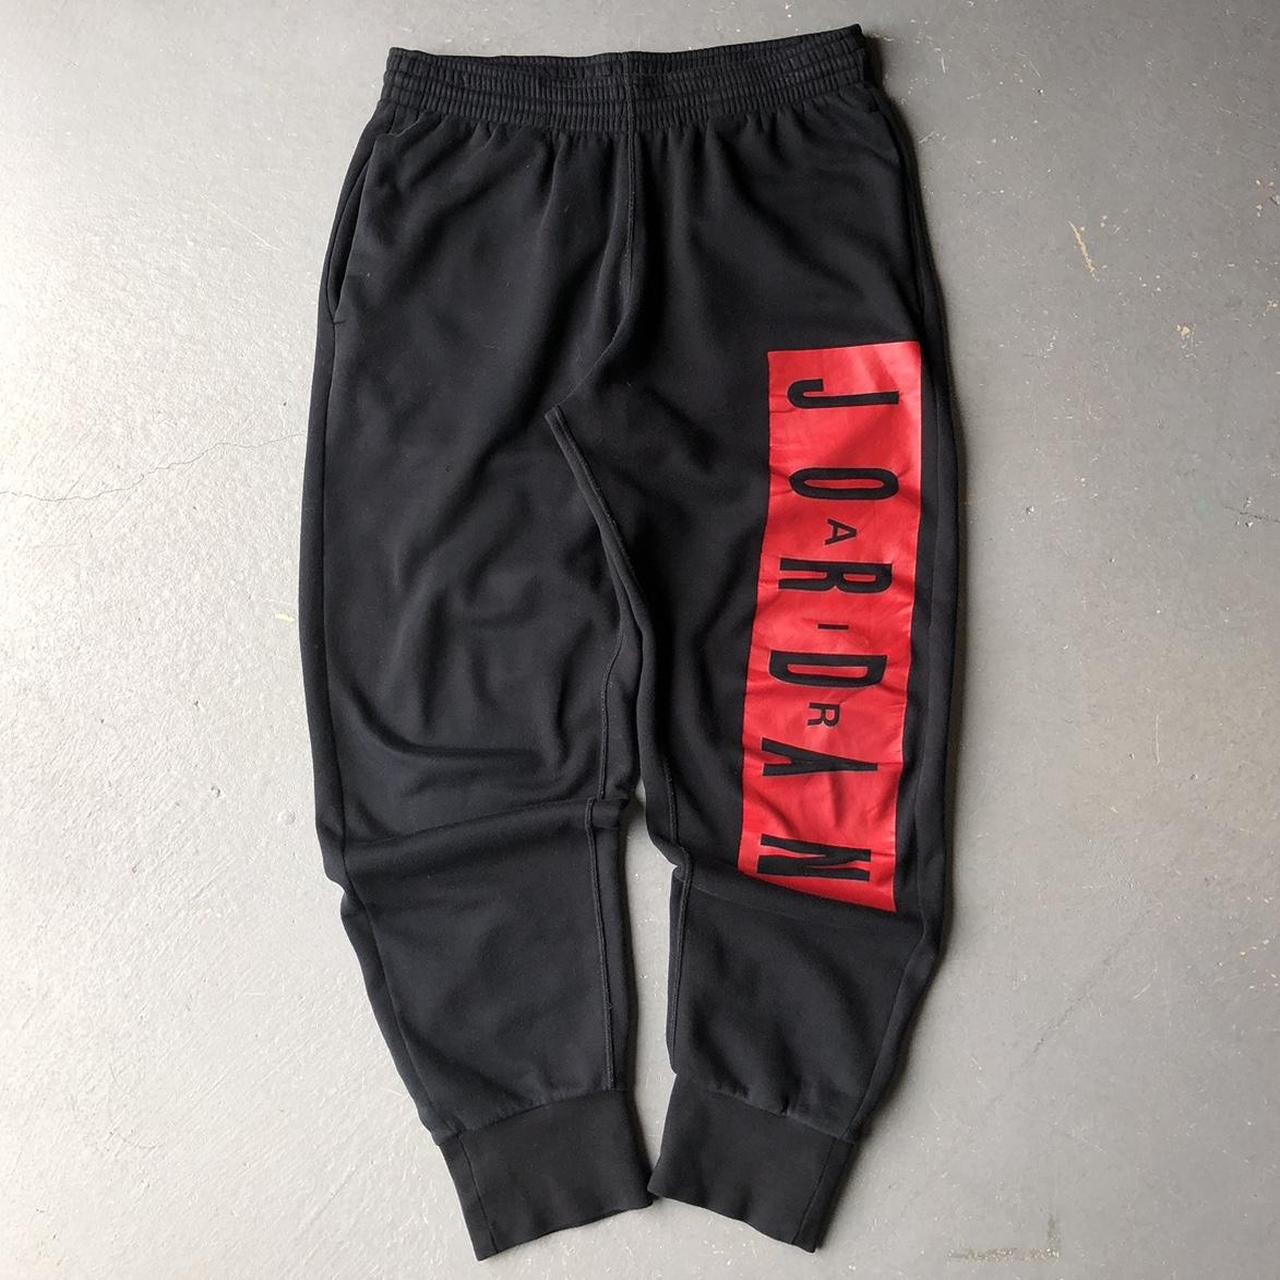 Jordan Black and Red sweatpants 